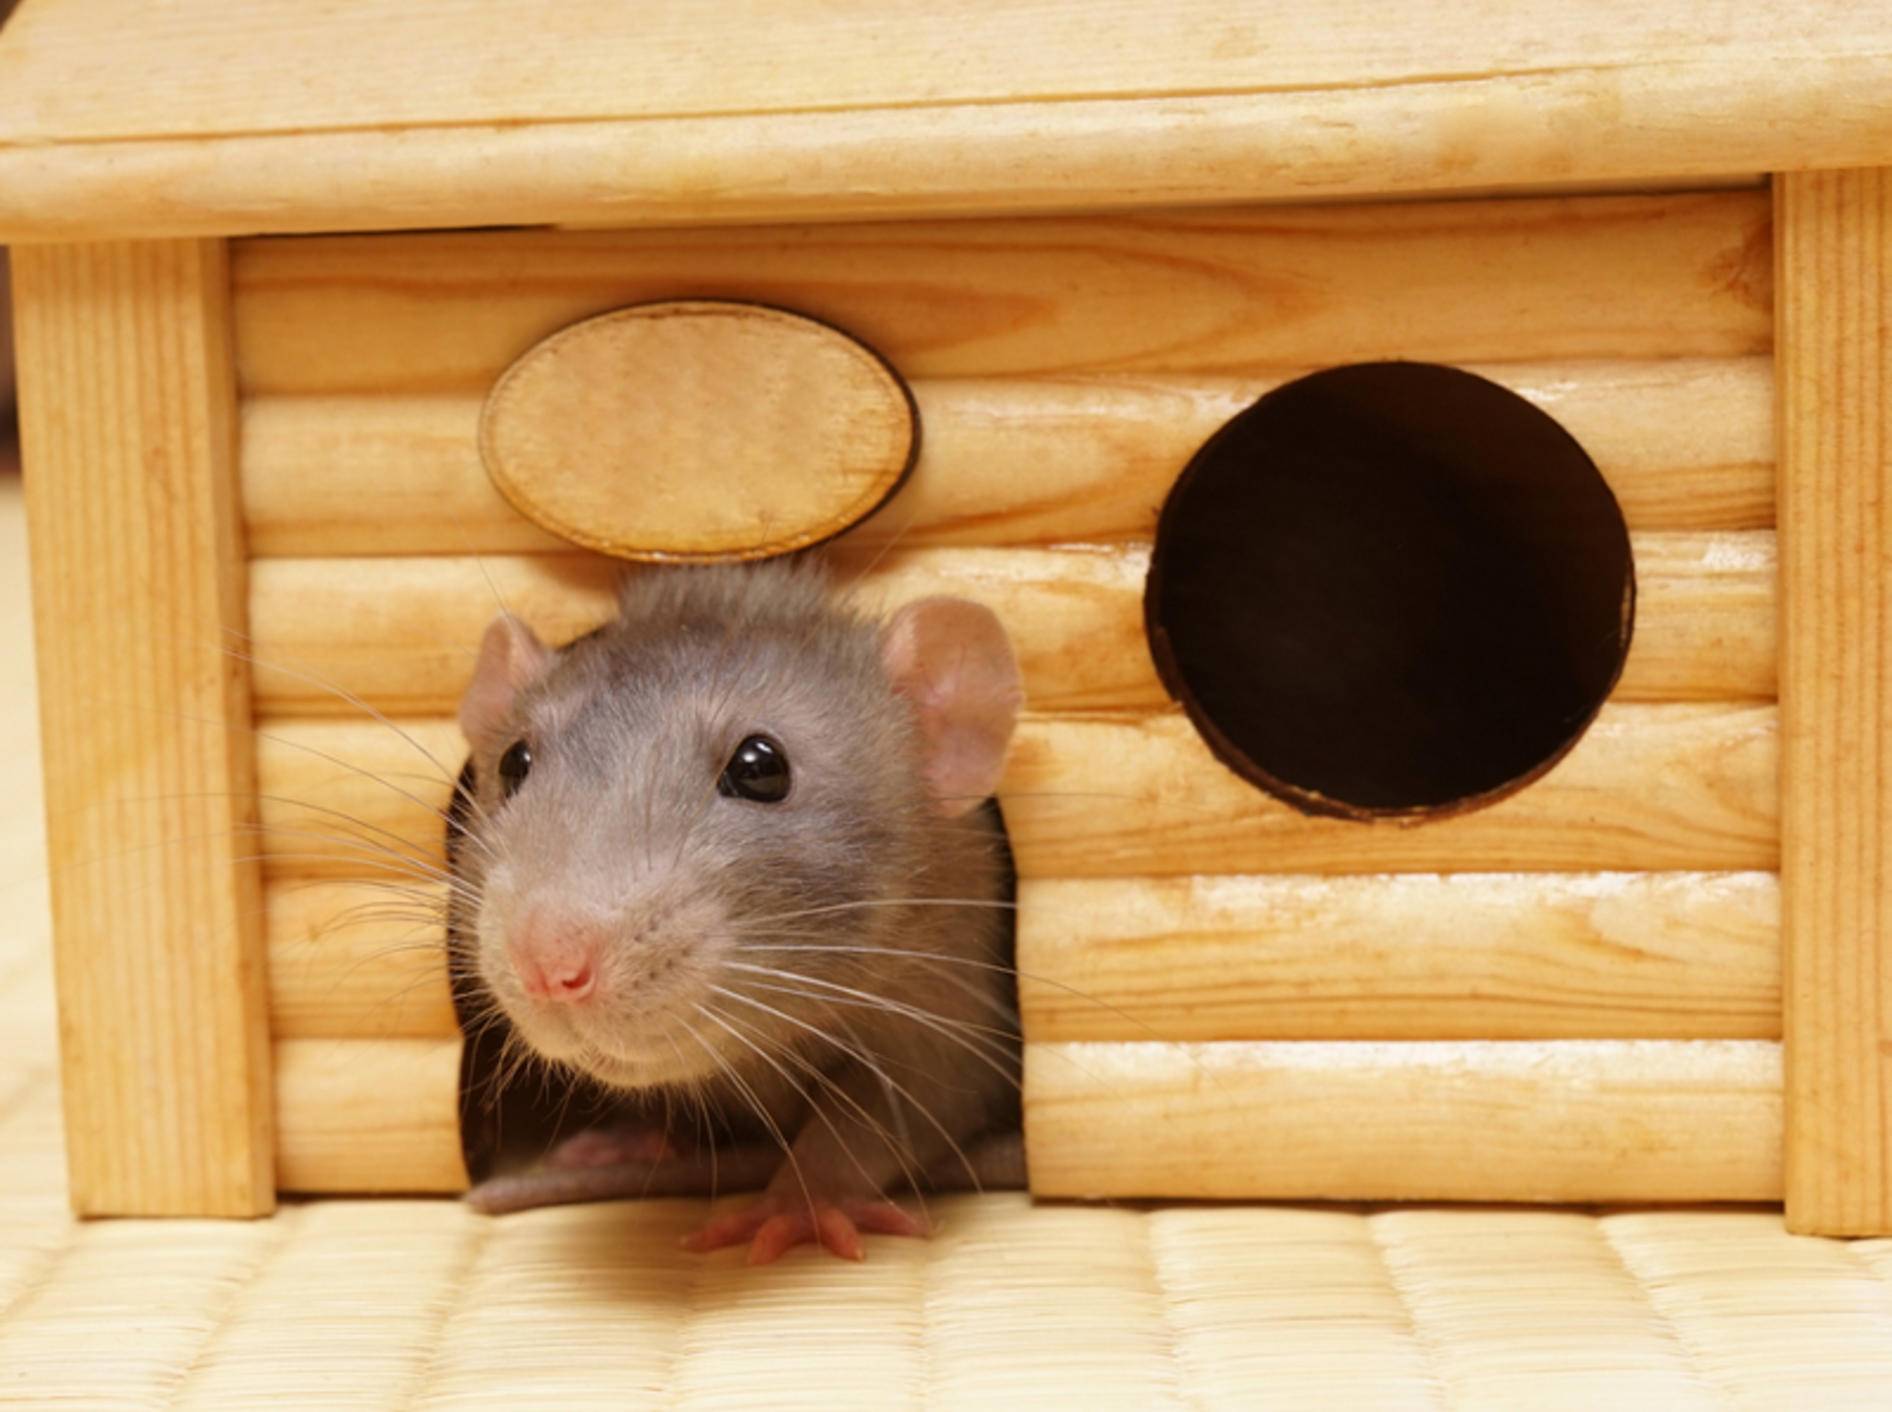 "So, dann komm ich mal aus dem Schlafhaus und schau mich ein wenig in meinem Mäusegehege um" – Shutterstock / Shcherbakov Ilya